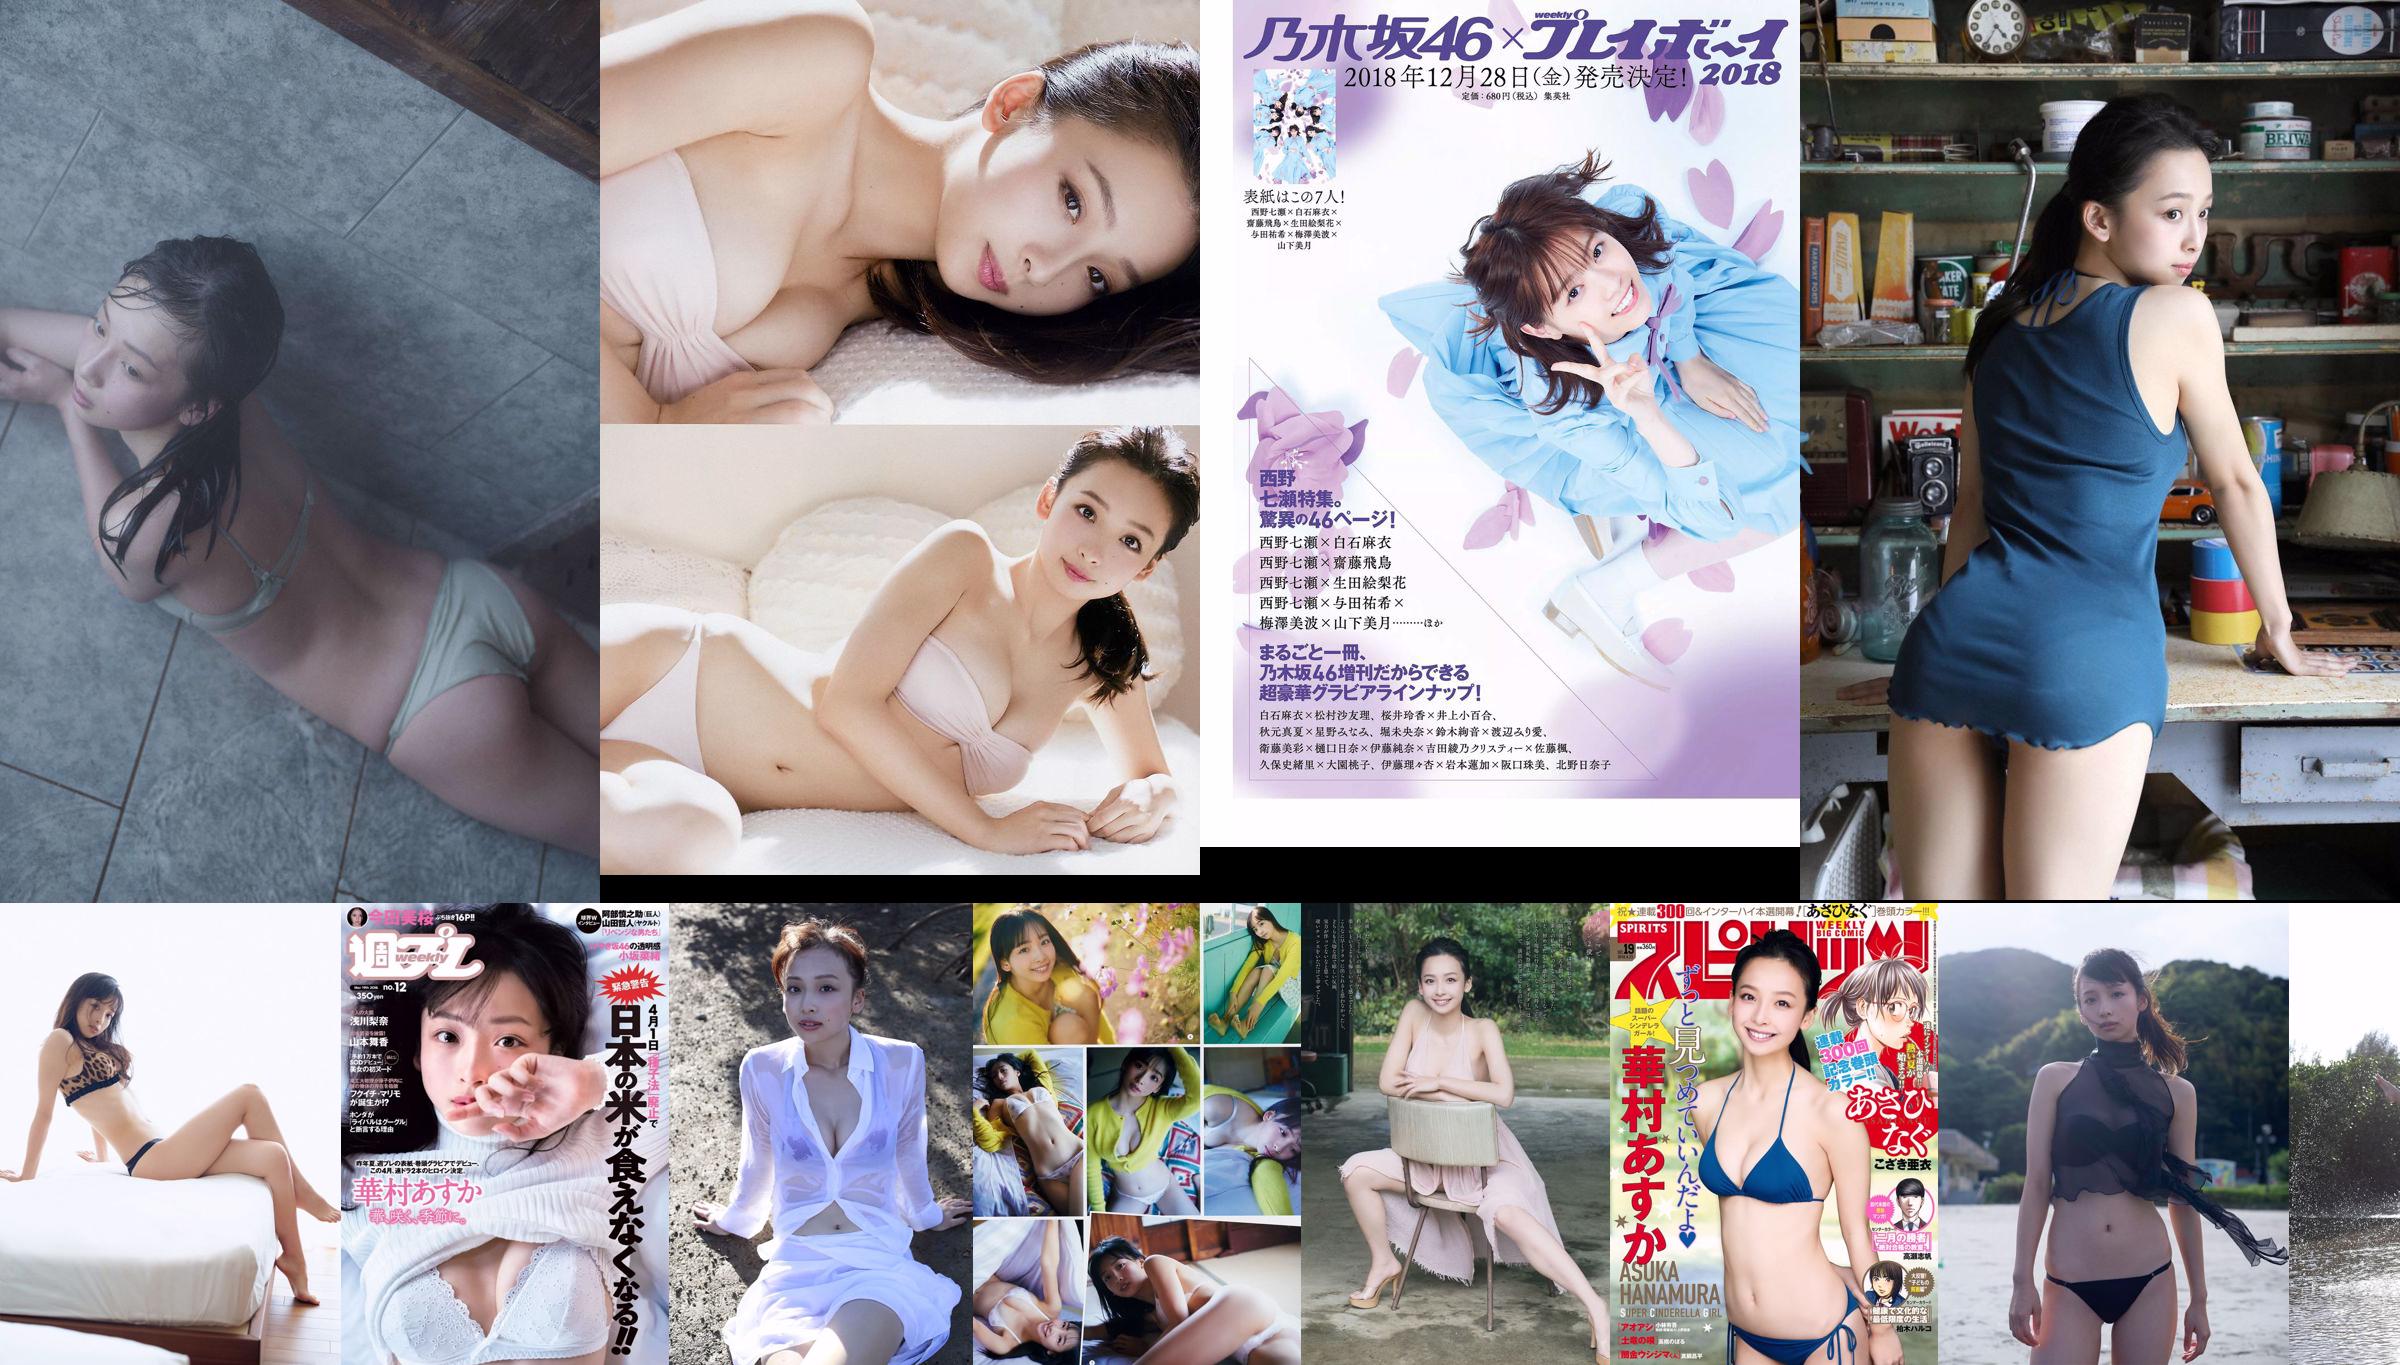 Asuka Hanamura Fumika Baba Kanna Haschimoto Momoka Ito Eri Oishi Yuka Kuramochi Aya Kawasaki [Wöchentlicher Playboy] 2017 Nr. 36 Foto No.f4abf2 Seite 1